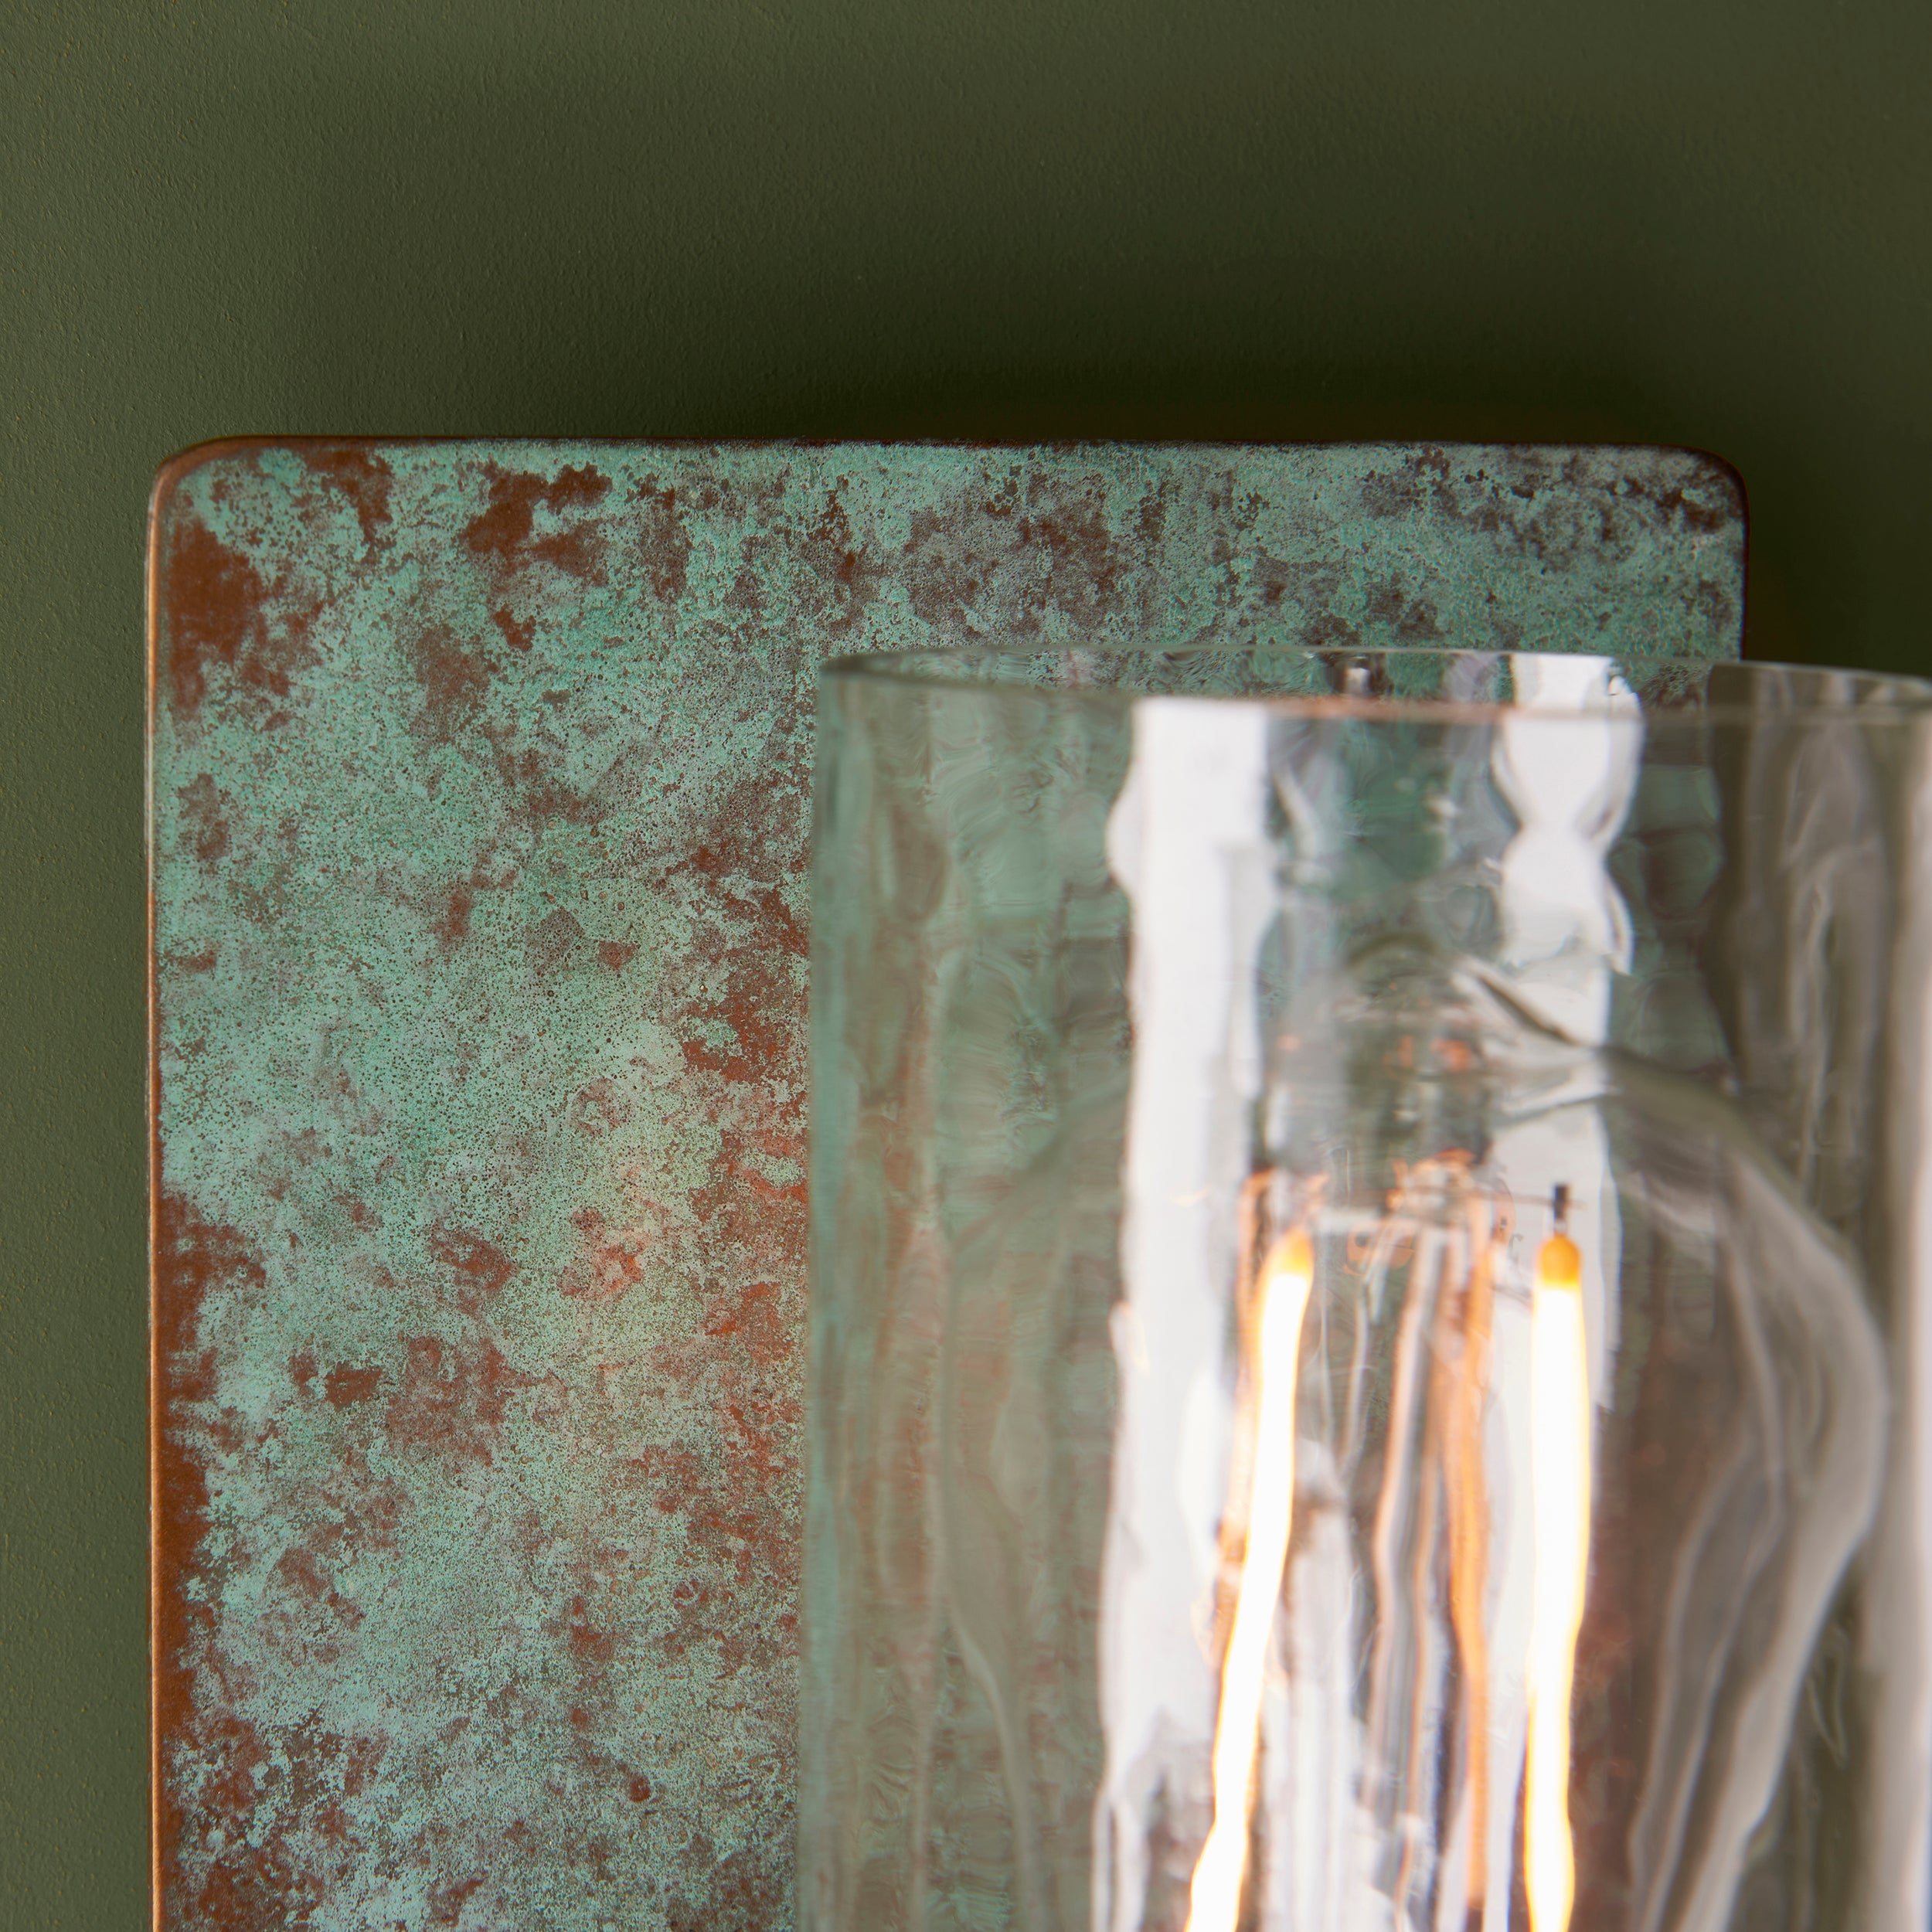 Lightologist Verdigris bronze plate & clear glass Metal Wall Light